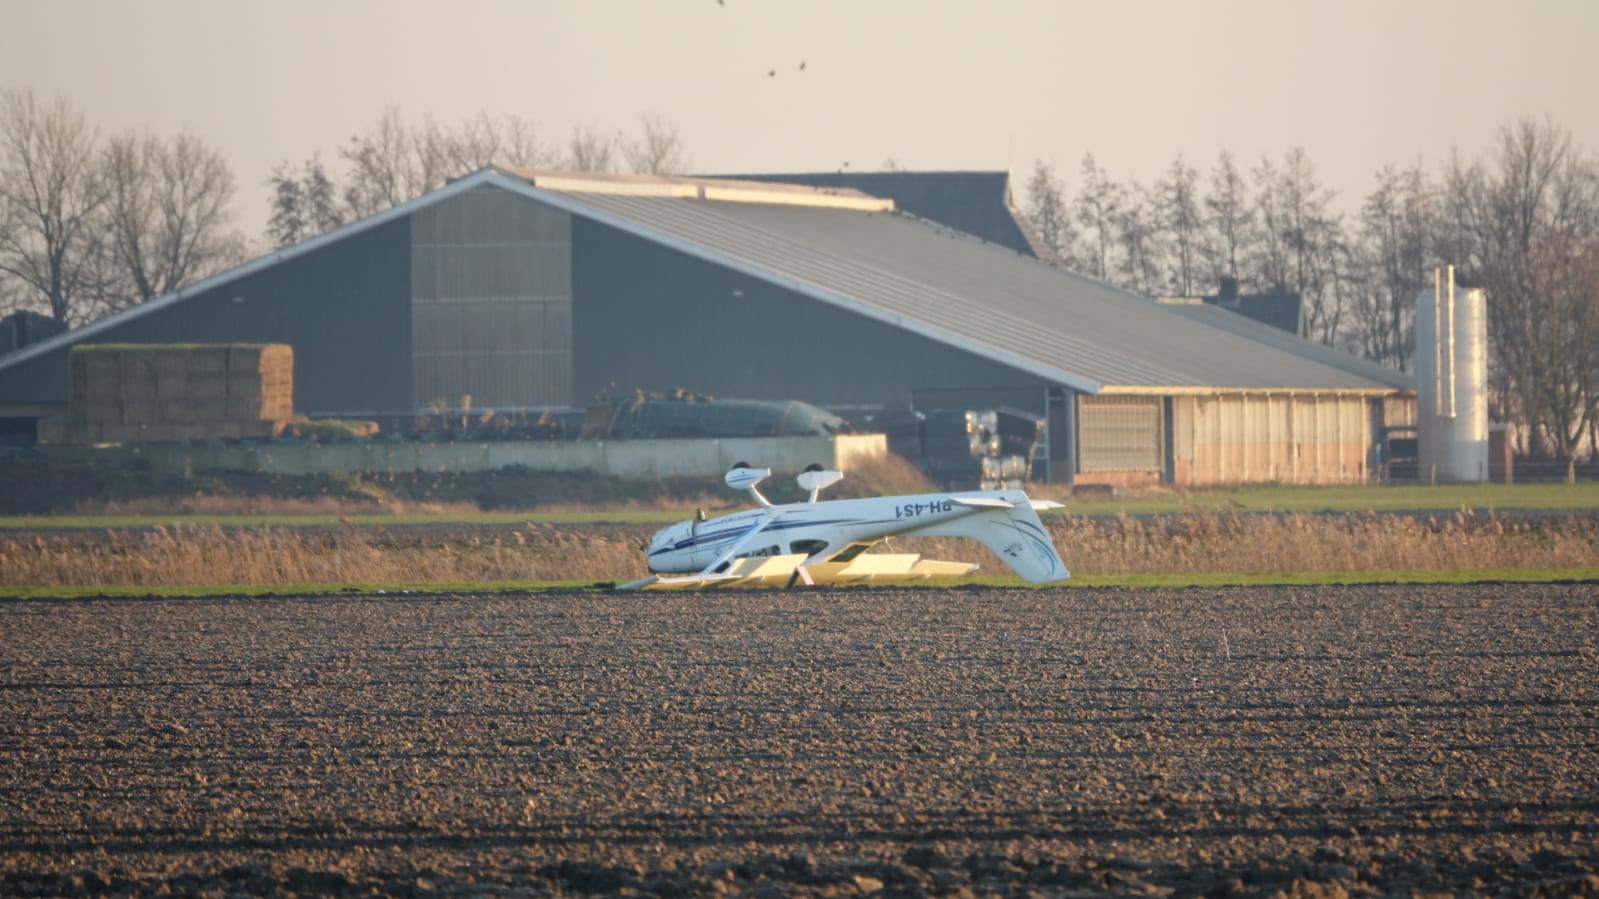 Vliegtuig neergestort vliegveld Middenmeer, gelukkig geen gewonden